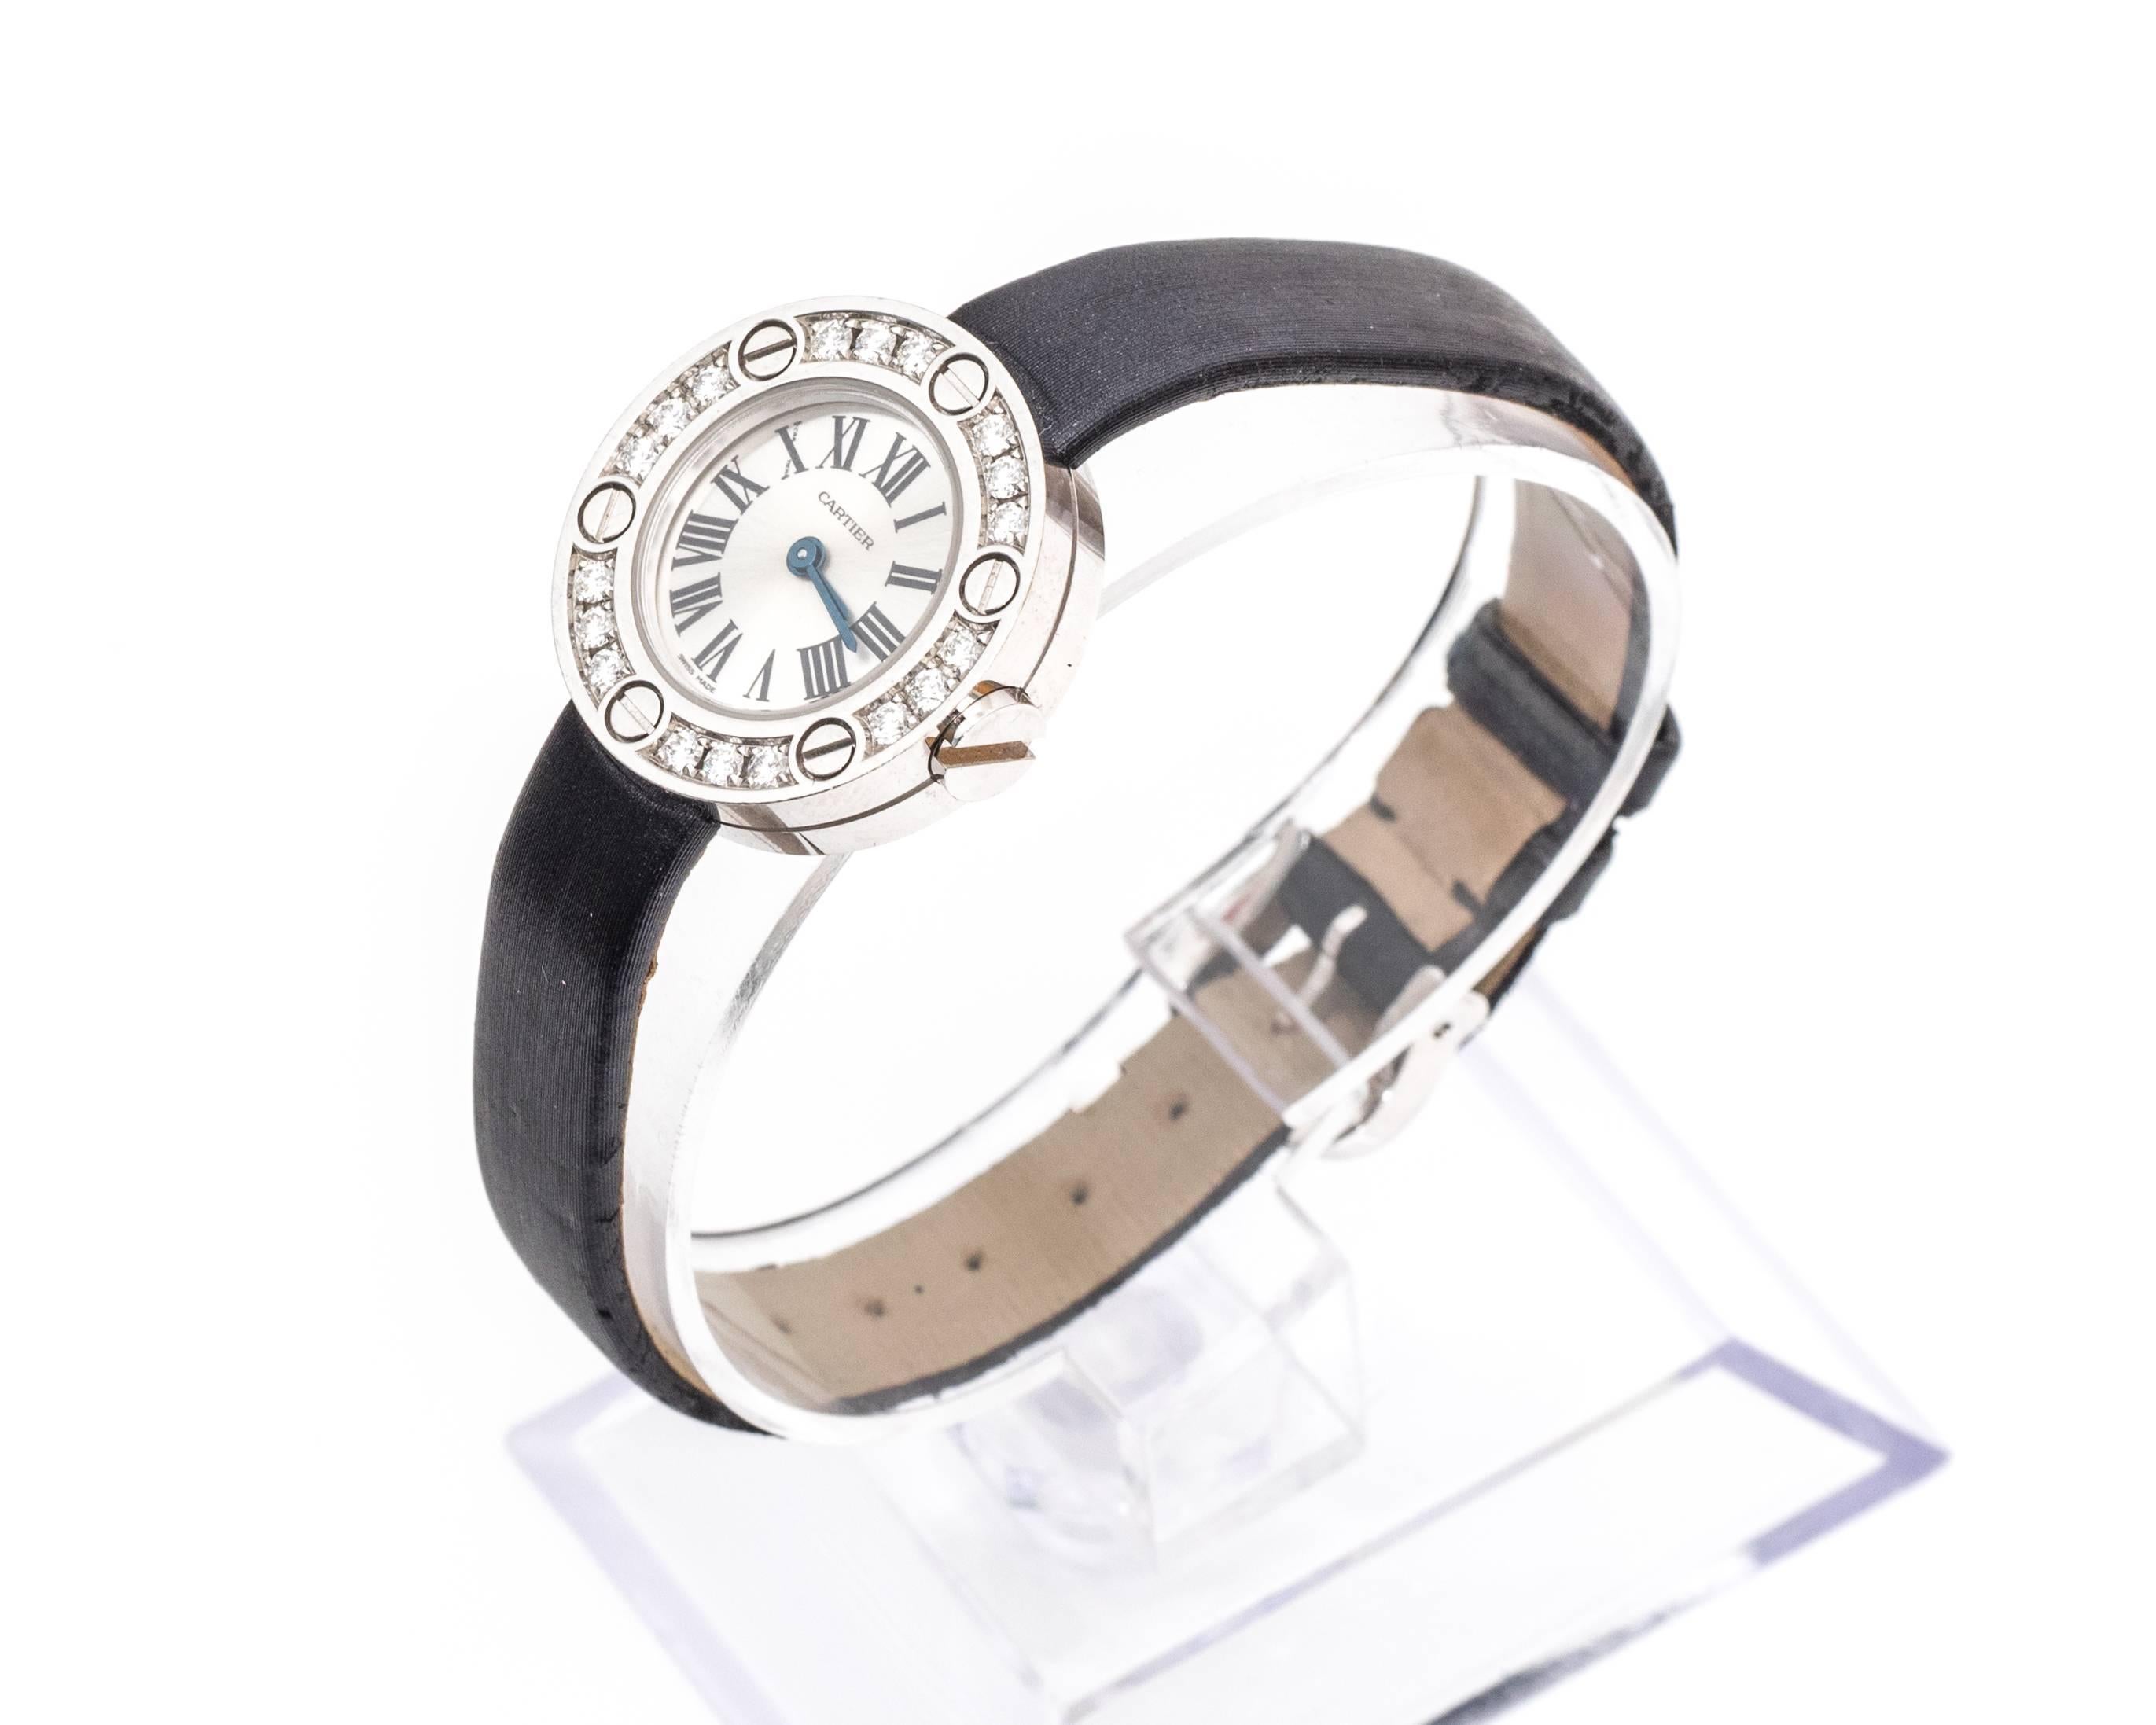 Cartier-Armbanduhr, Teil der Serie Love
18 Karat Gold und Diamanten
Schwarzes Lederarmband (Zustand ist neuwertig und kann durch ein neues Armband ersetzt werden) 
Modellnummer WE800331
Mit 18 Diamanten entlang des Zifferblattrahmens mit